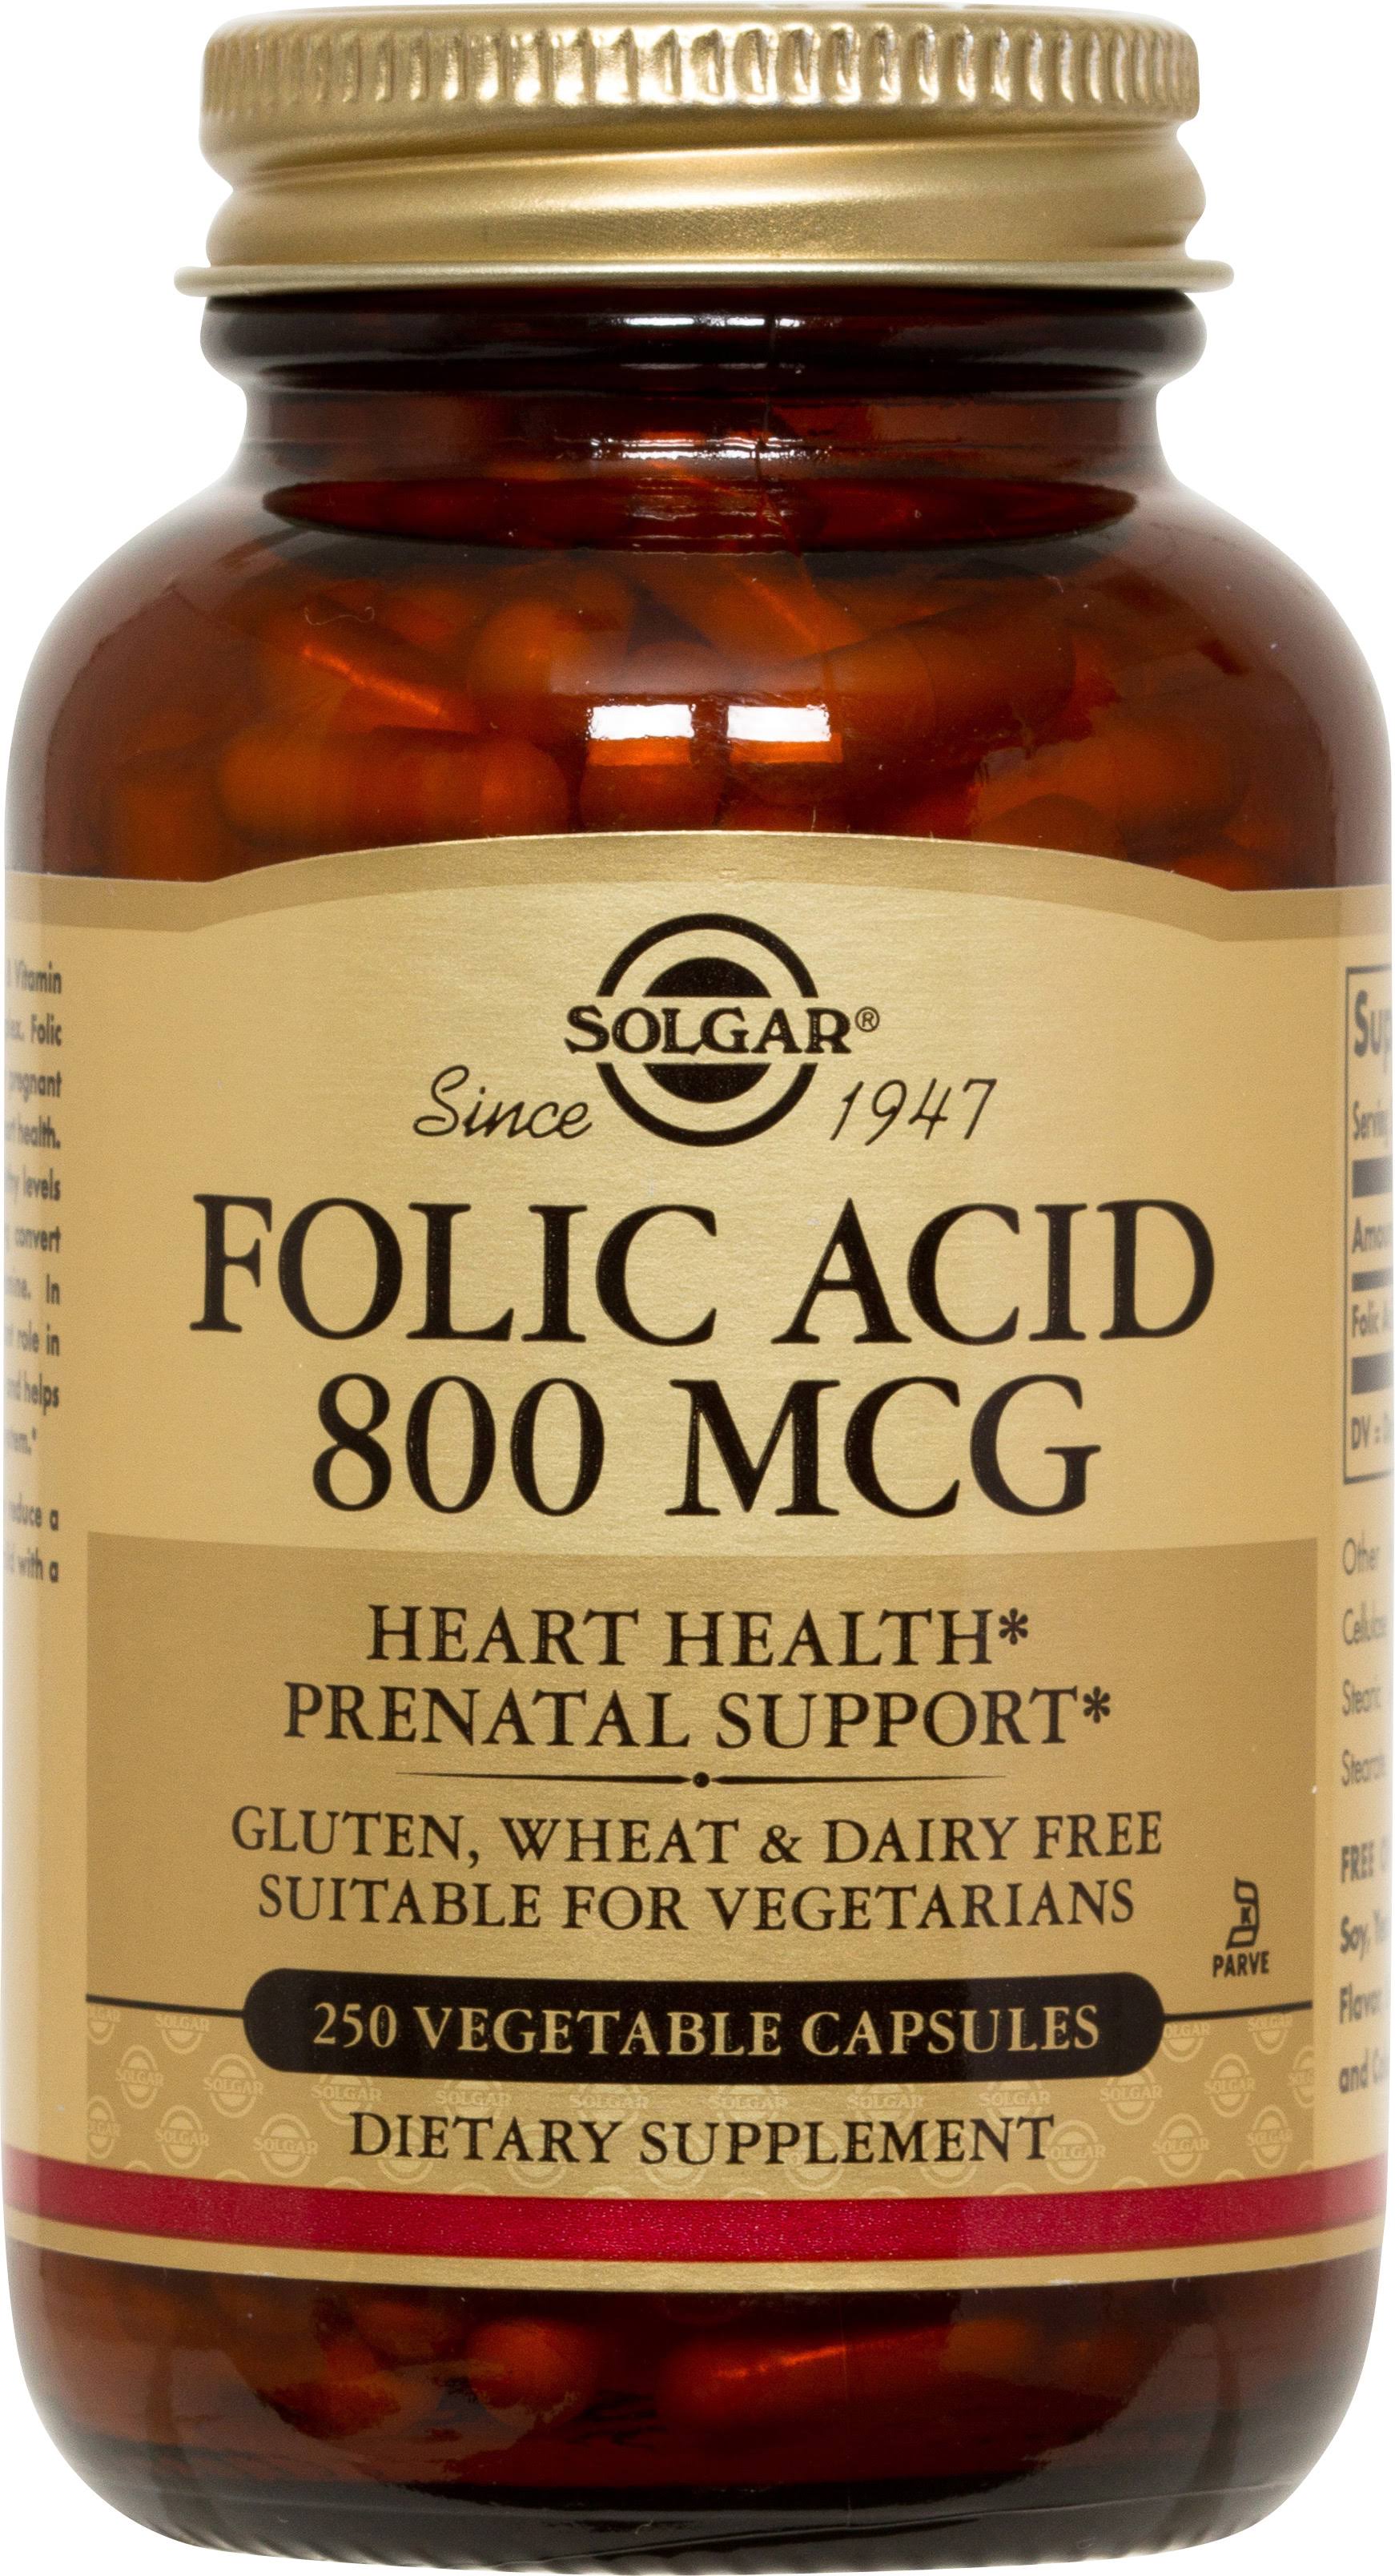 Solgar Folic Acid 800 Mcg Supplement - 250 Vegetable Capsules